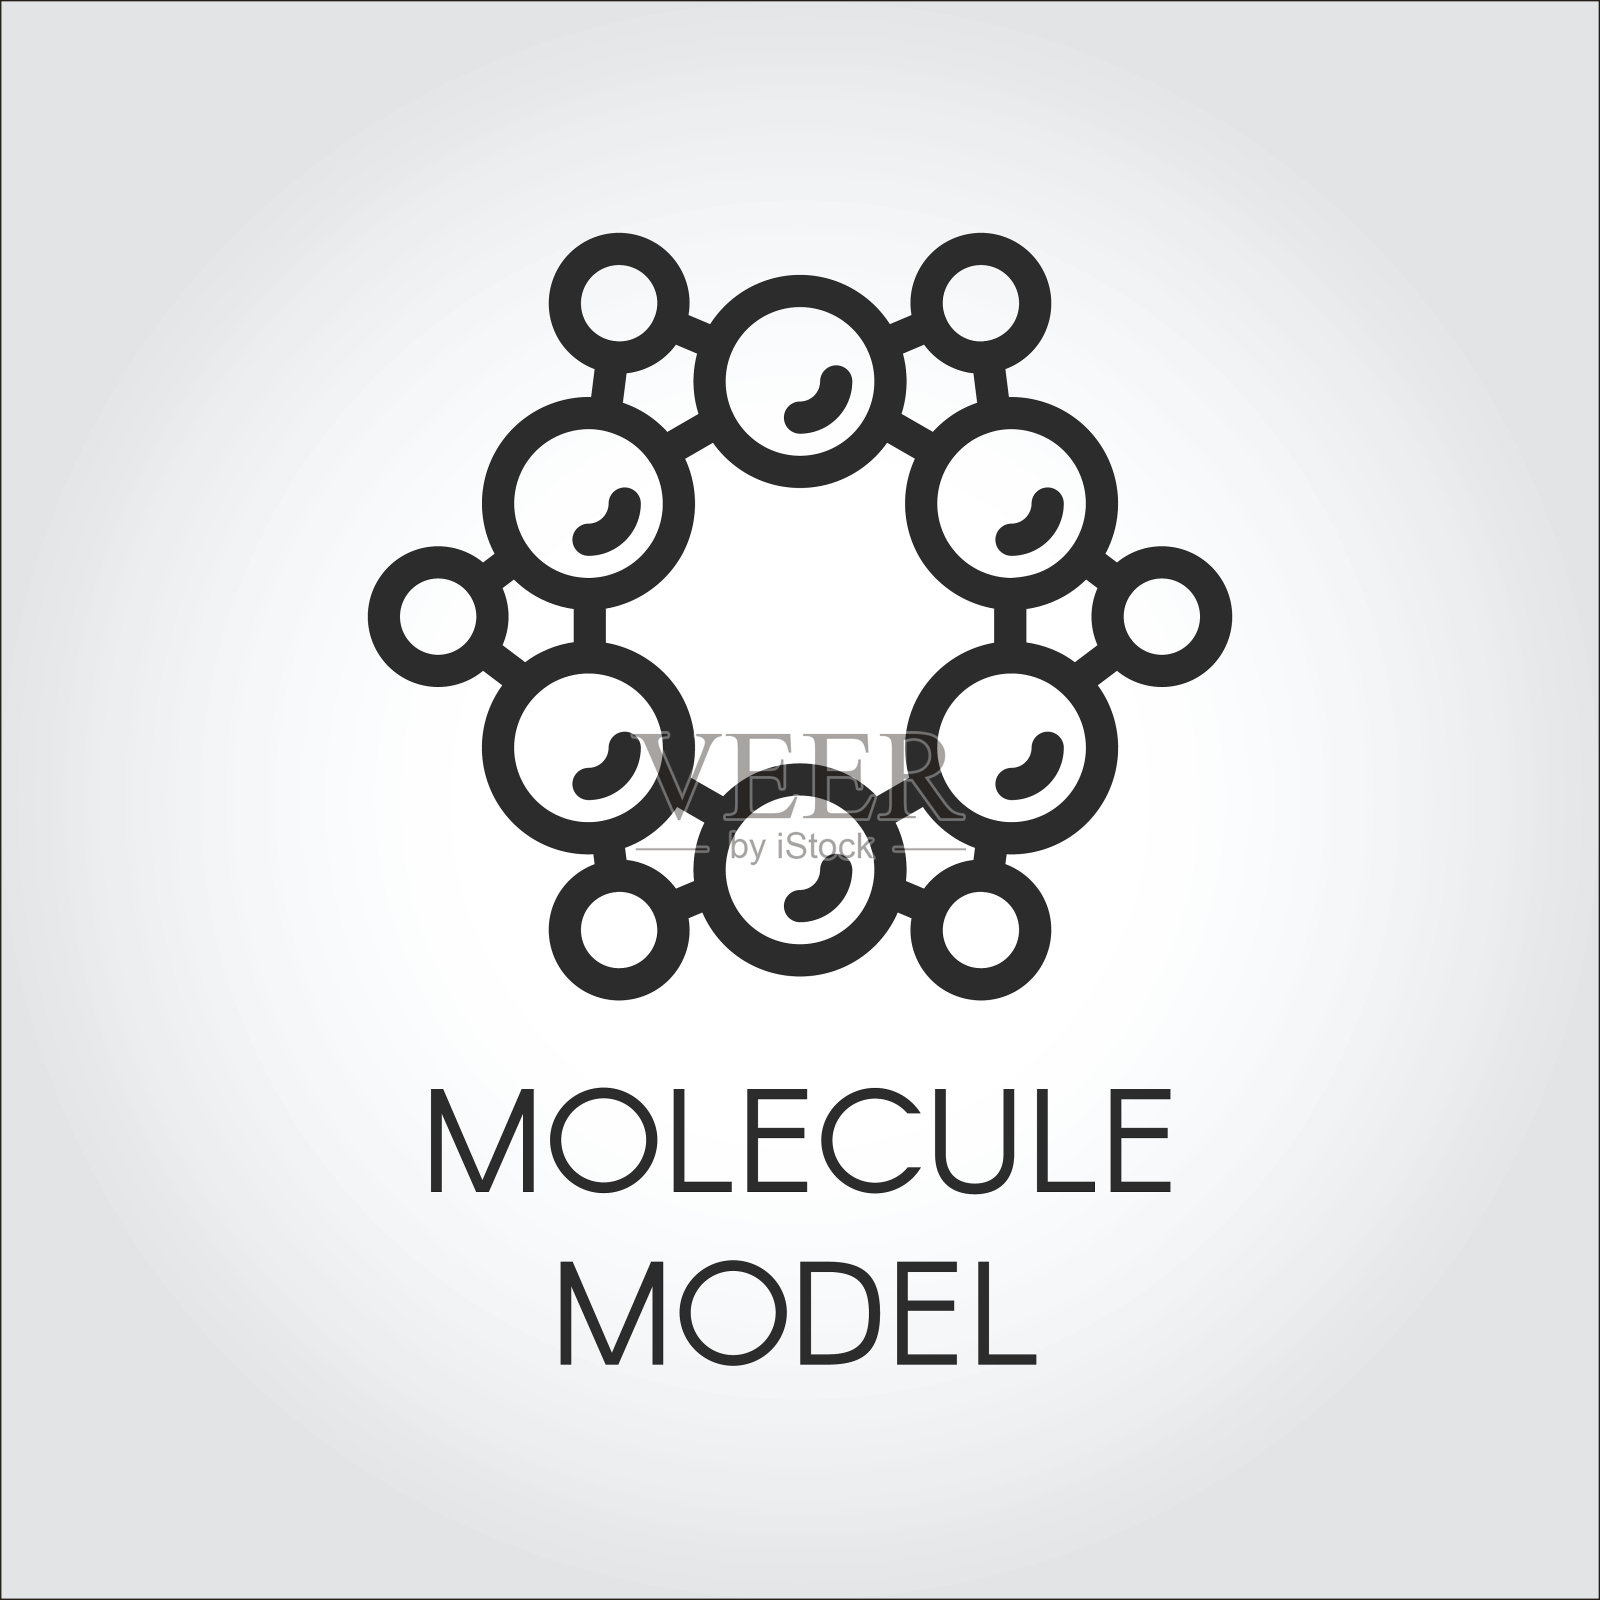 化学原子和分子模型线图标。用于科学、化学、物理、教育等项目的标签插画图片素材